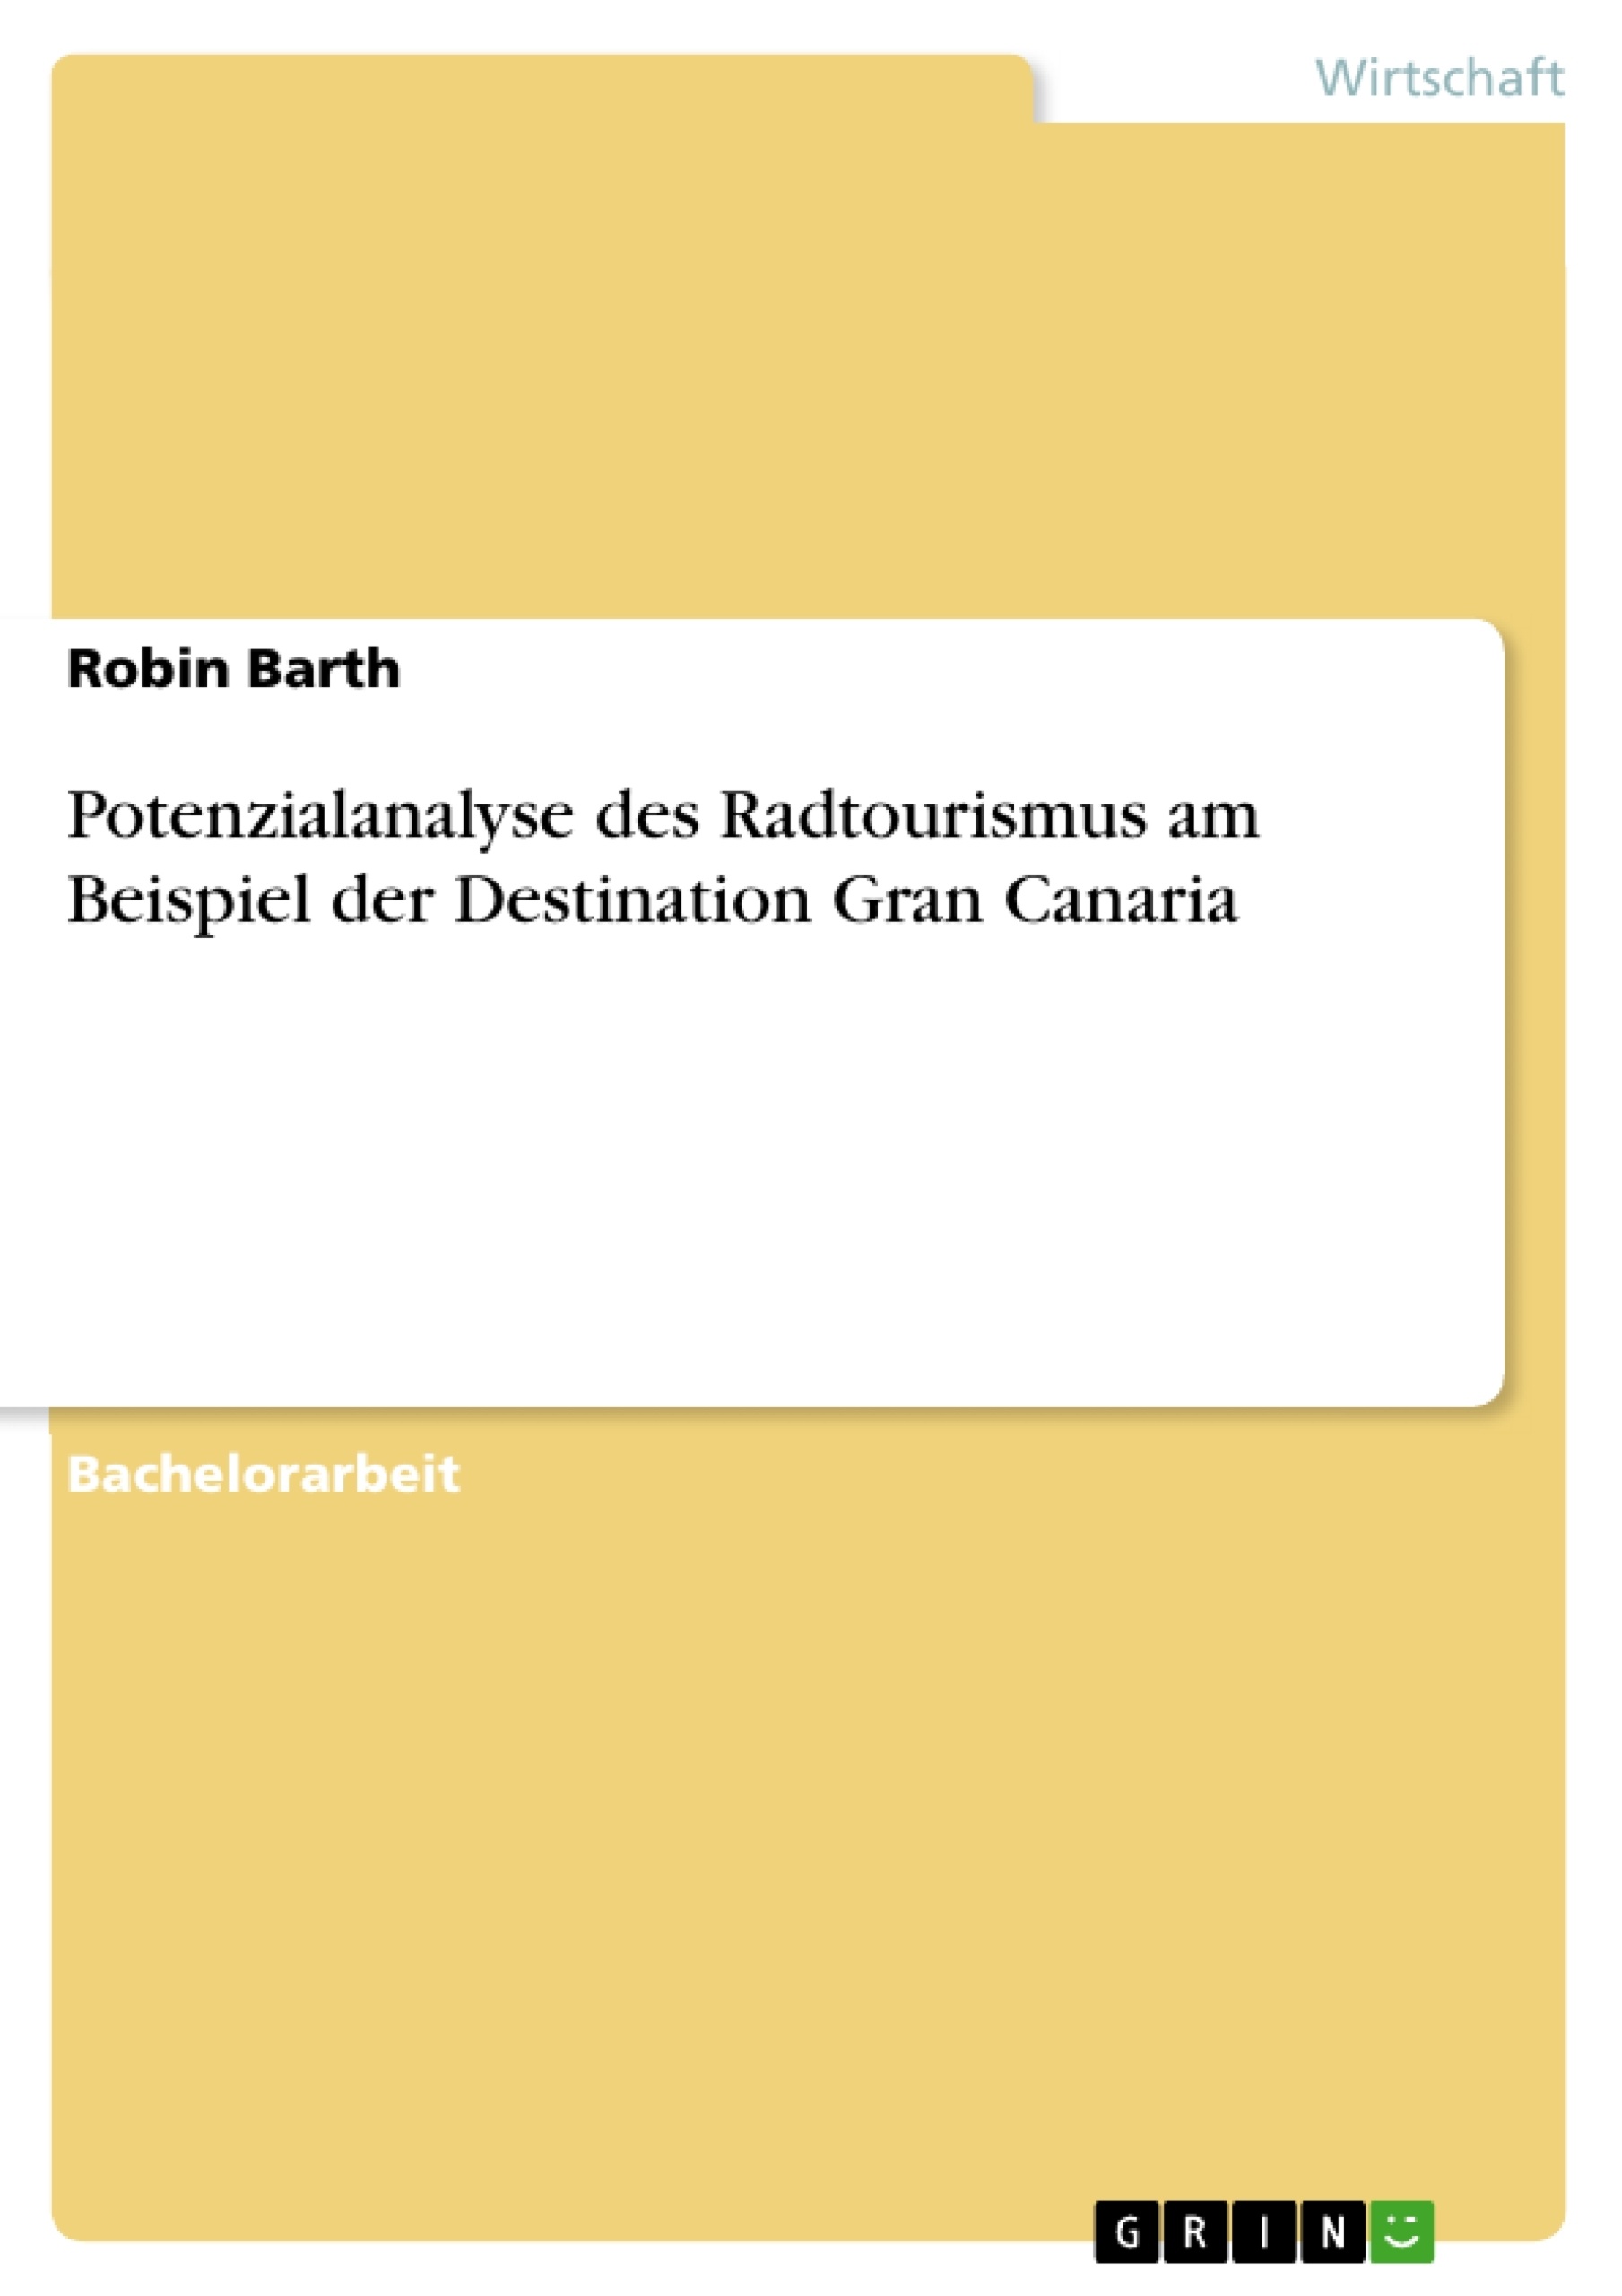 Title: Potenzialanalyse des Radtourismus am Beispiel der Destination Gran Canaria